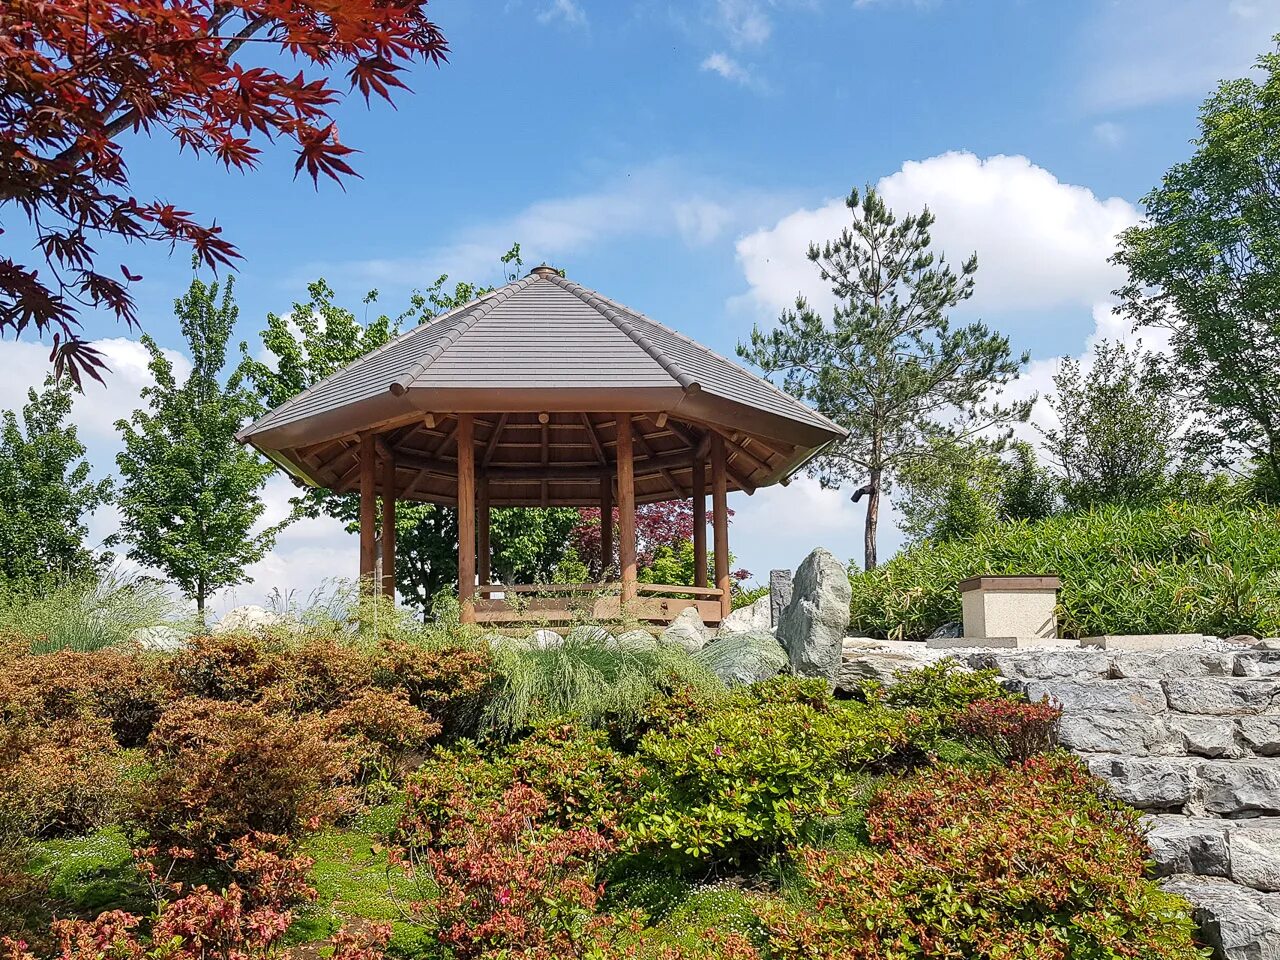 Как получить код в японский сад краснодар. Японский сад Краснодар. Краснодар японский сад японский сад. Японский сад в парке Краснодар. Японский сад Галицкий.